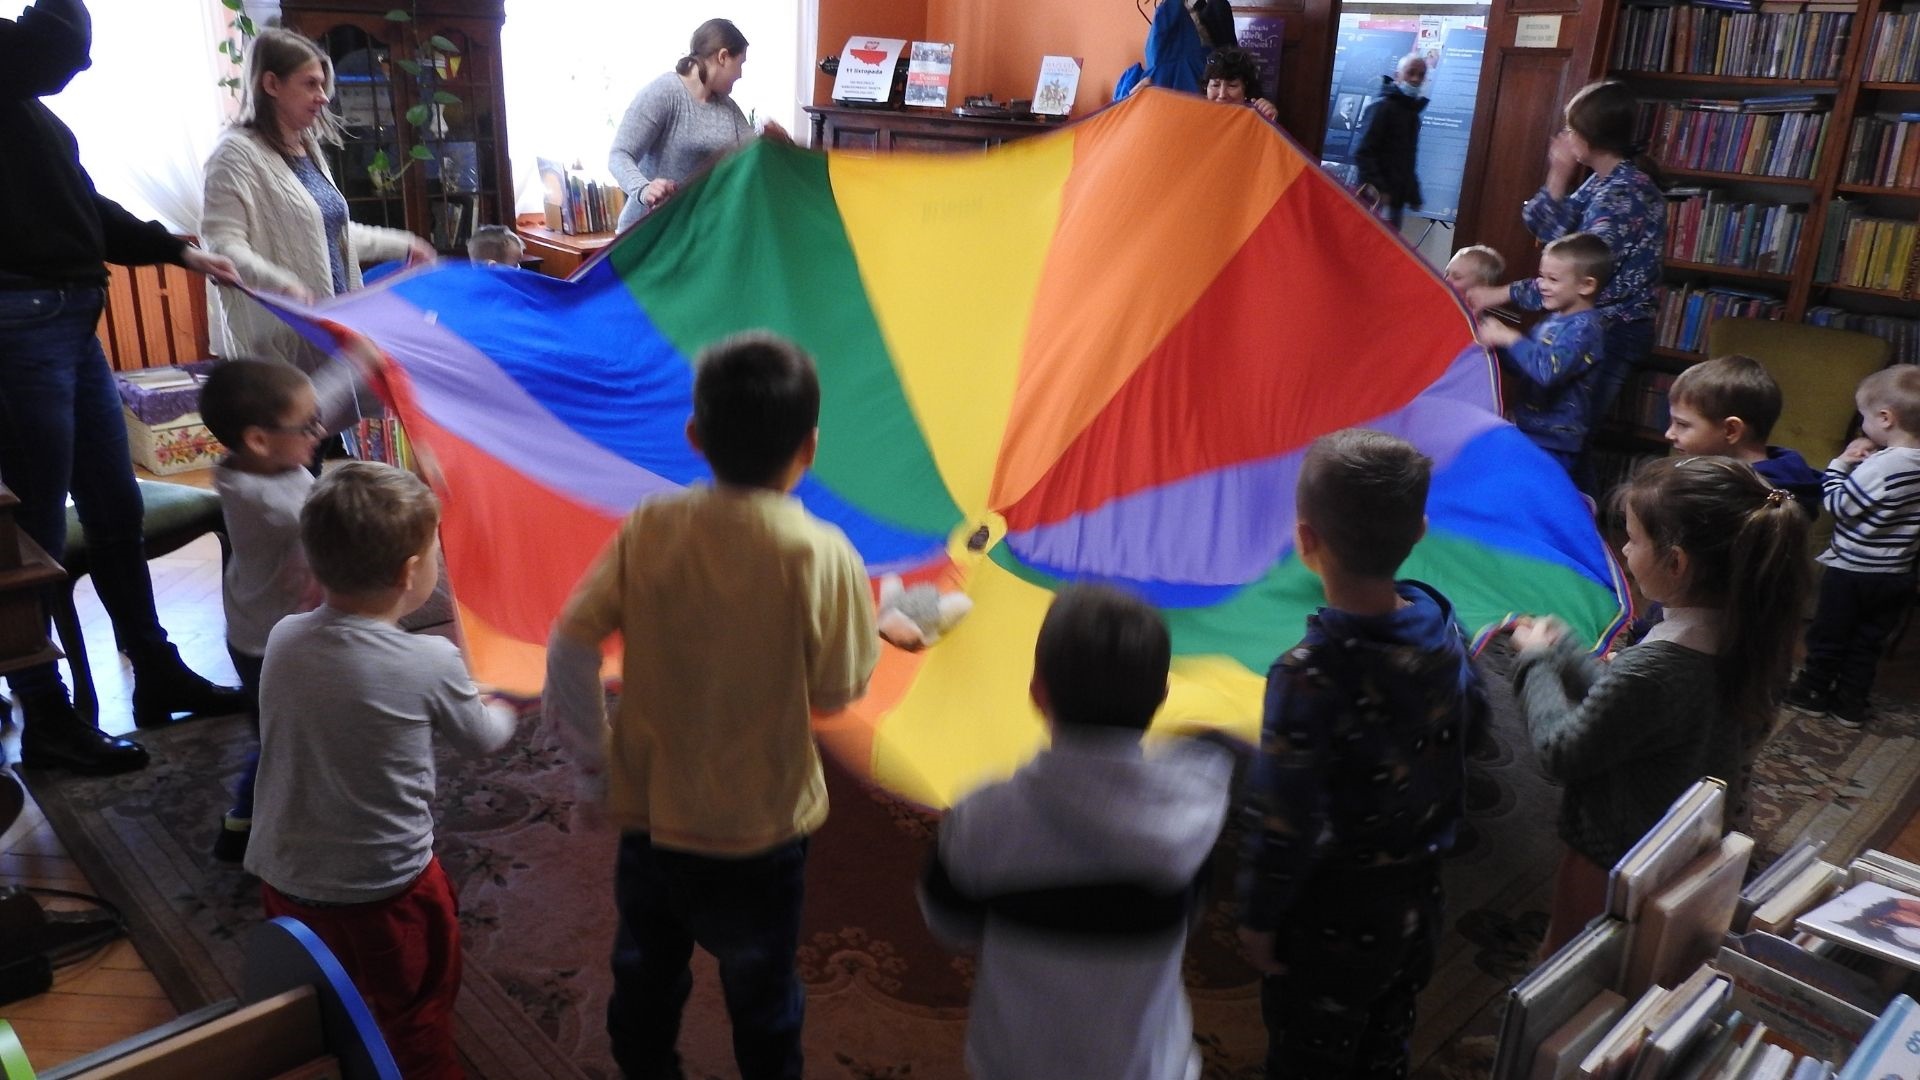 Zdjęcie wewnątrz pomieszczenia. Kilkoro dorosłych oraz dzieci stoi w okregu i trzyma kolorowa płachtę.